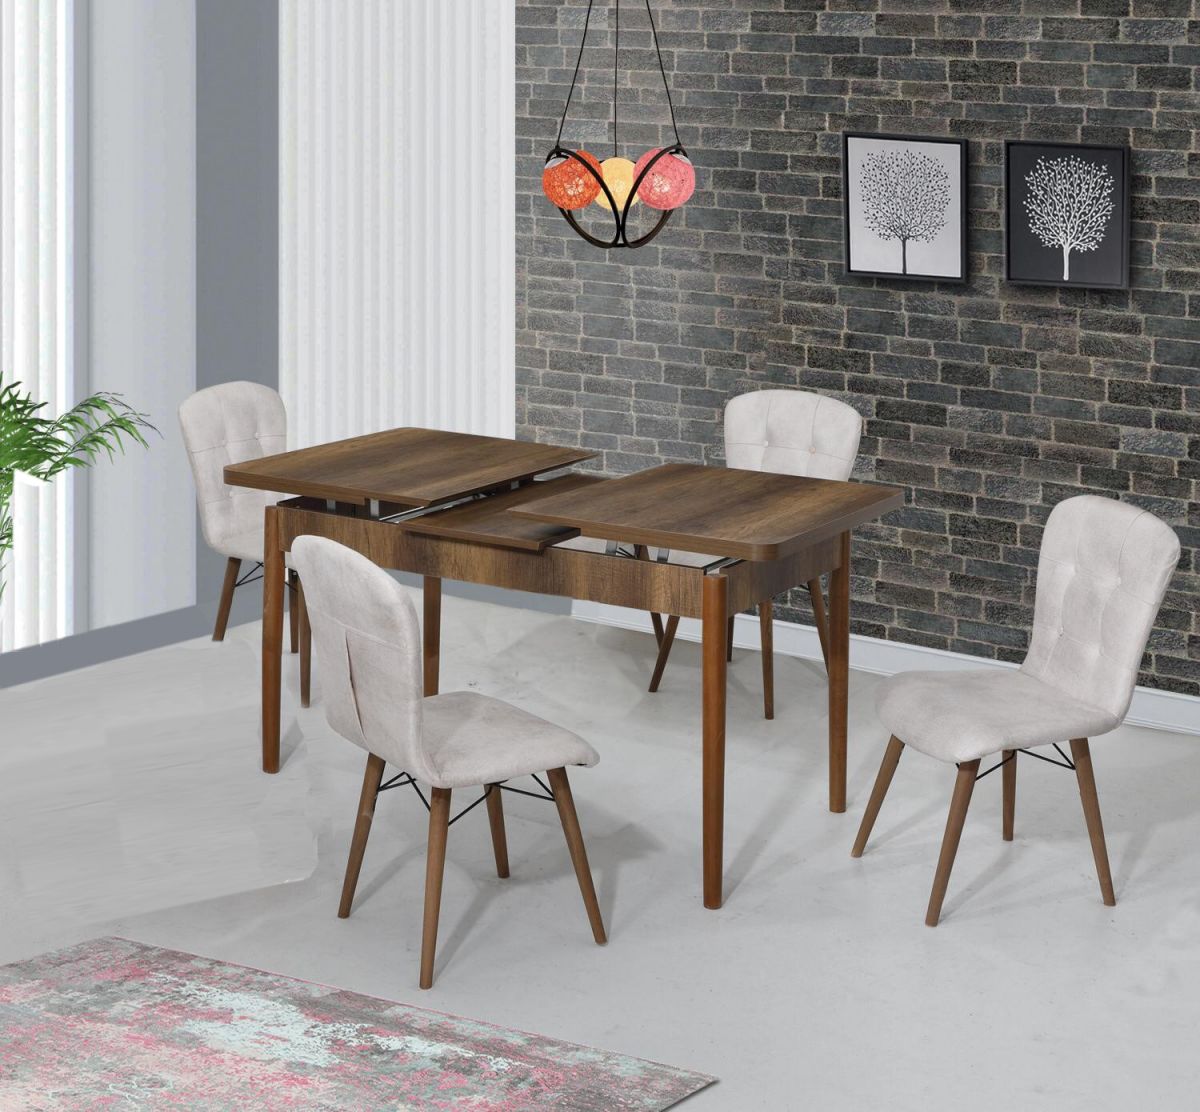 Set masa extensibila cu 4 scaune tapitate Homs nuc/bej 110 x 70 cm picioare lemn  